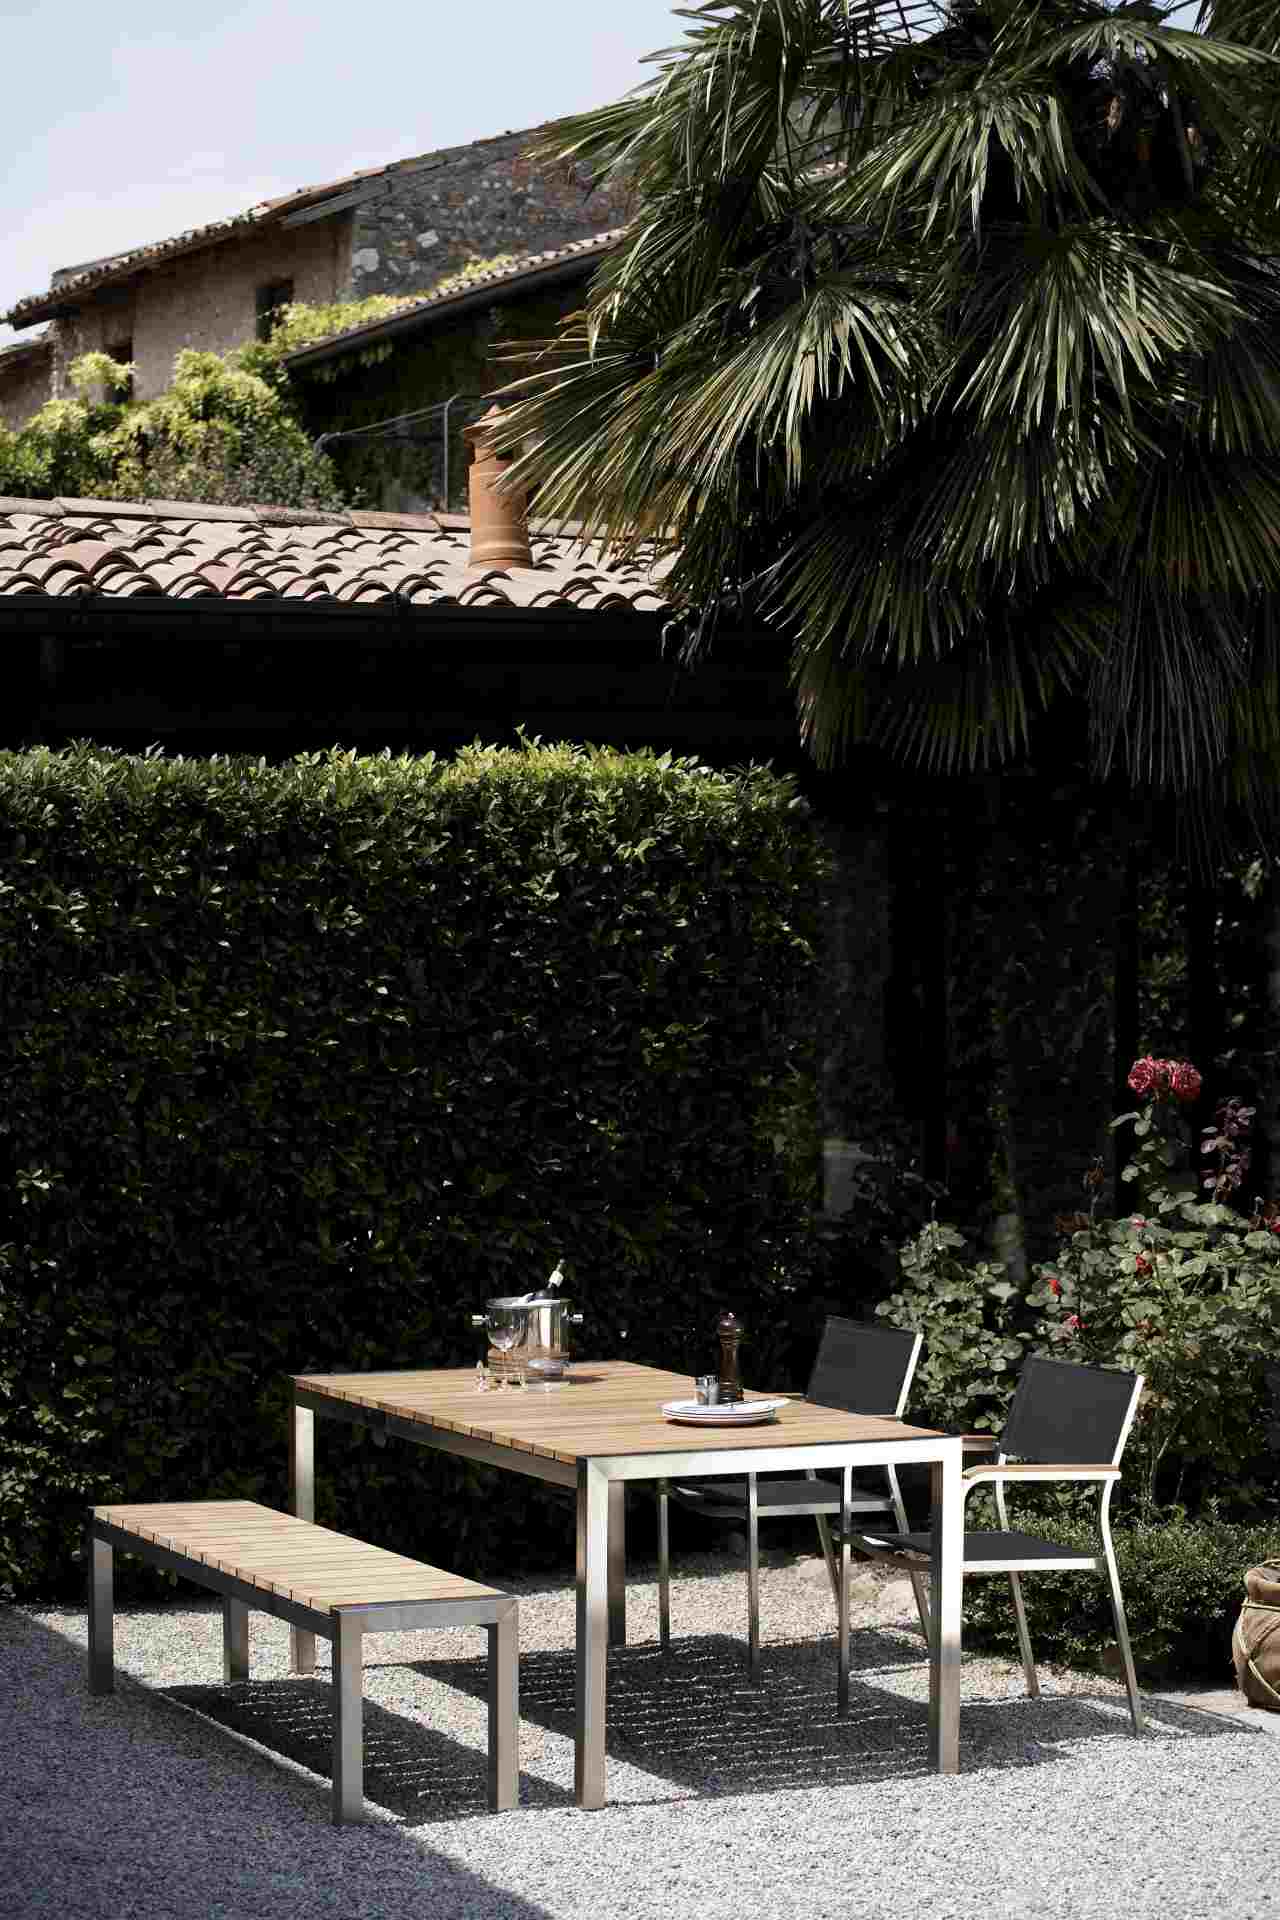 Der moderne Gartentisch Luxury wurde aus einem Edelstahlgestell und einer Teakholz-Platte gefertigt. Designet wurde der Tisch von der Marke Jan Kurtz und hat eine Länge von 180 cm.